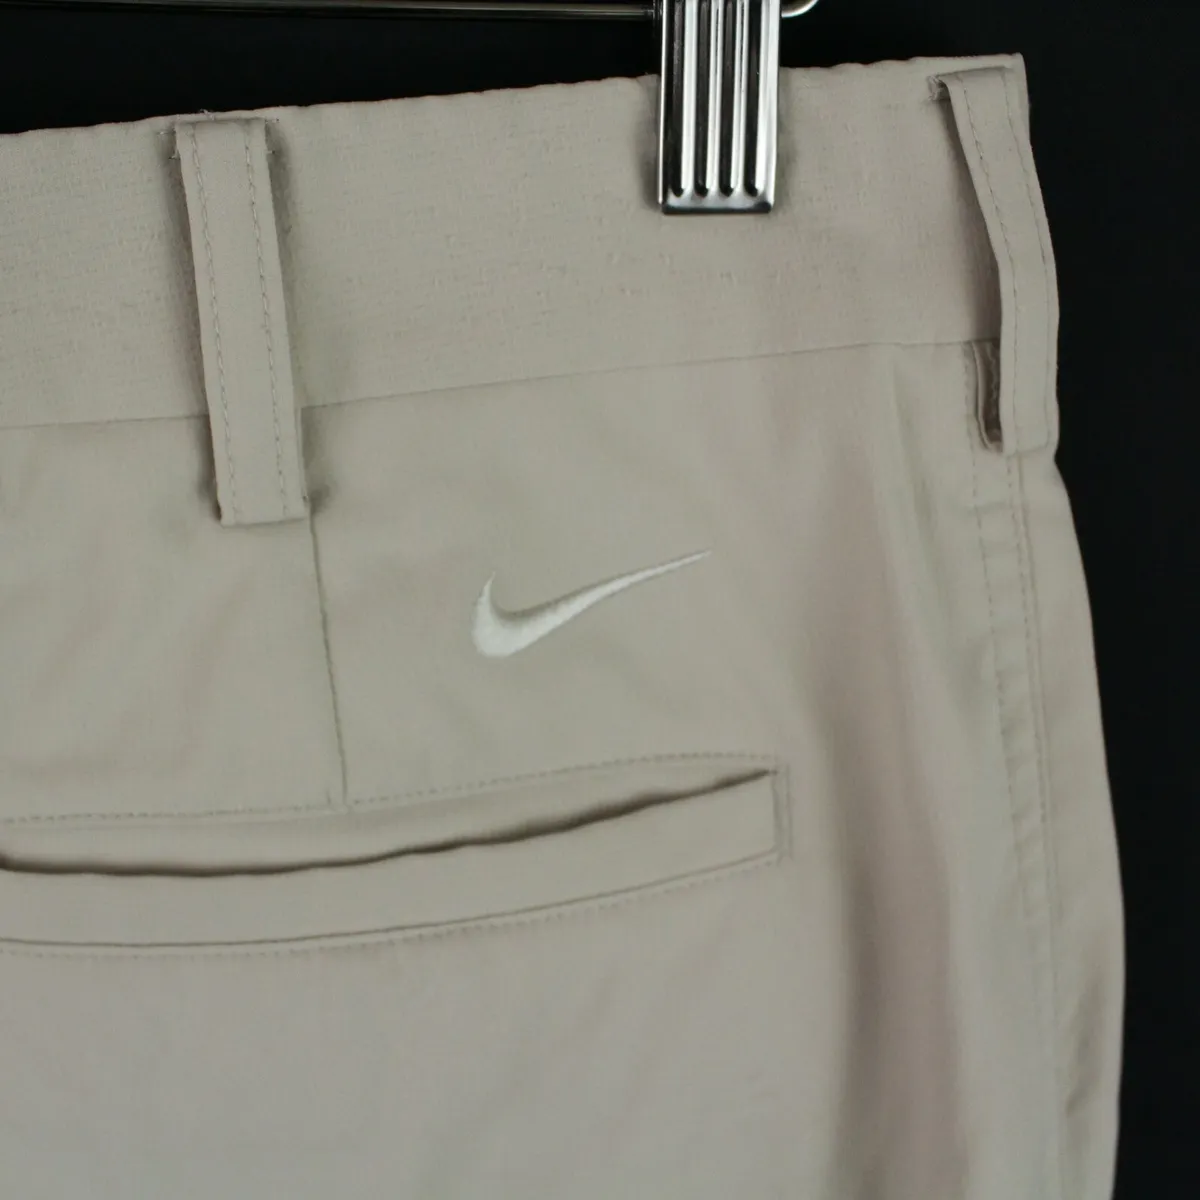 Nike golf pants Size 35x30 Flat beige dri fit | eBay